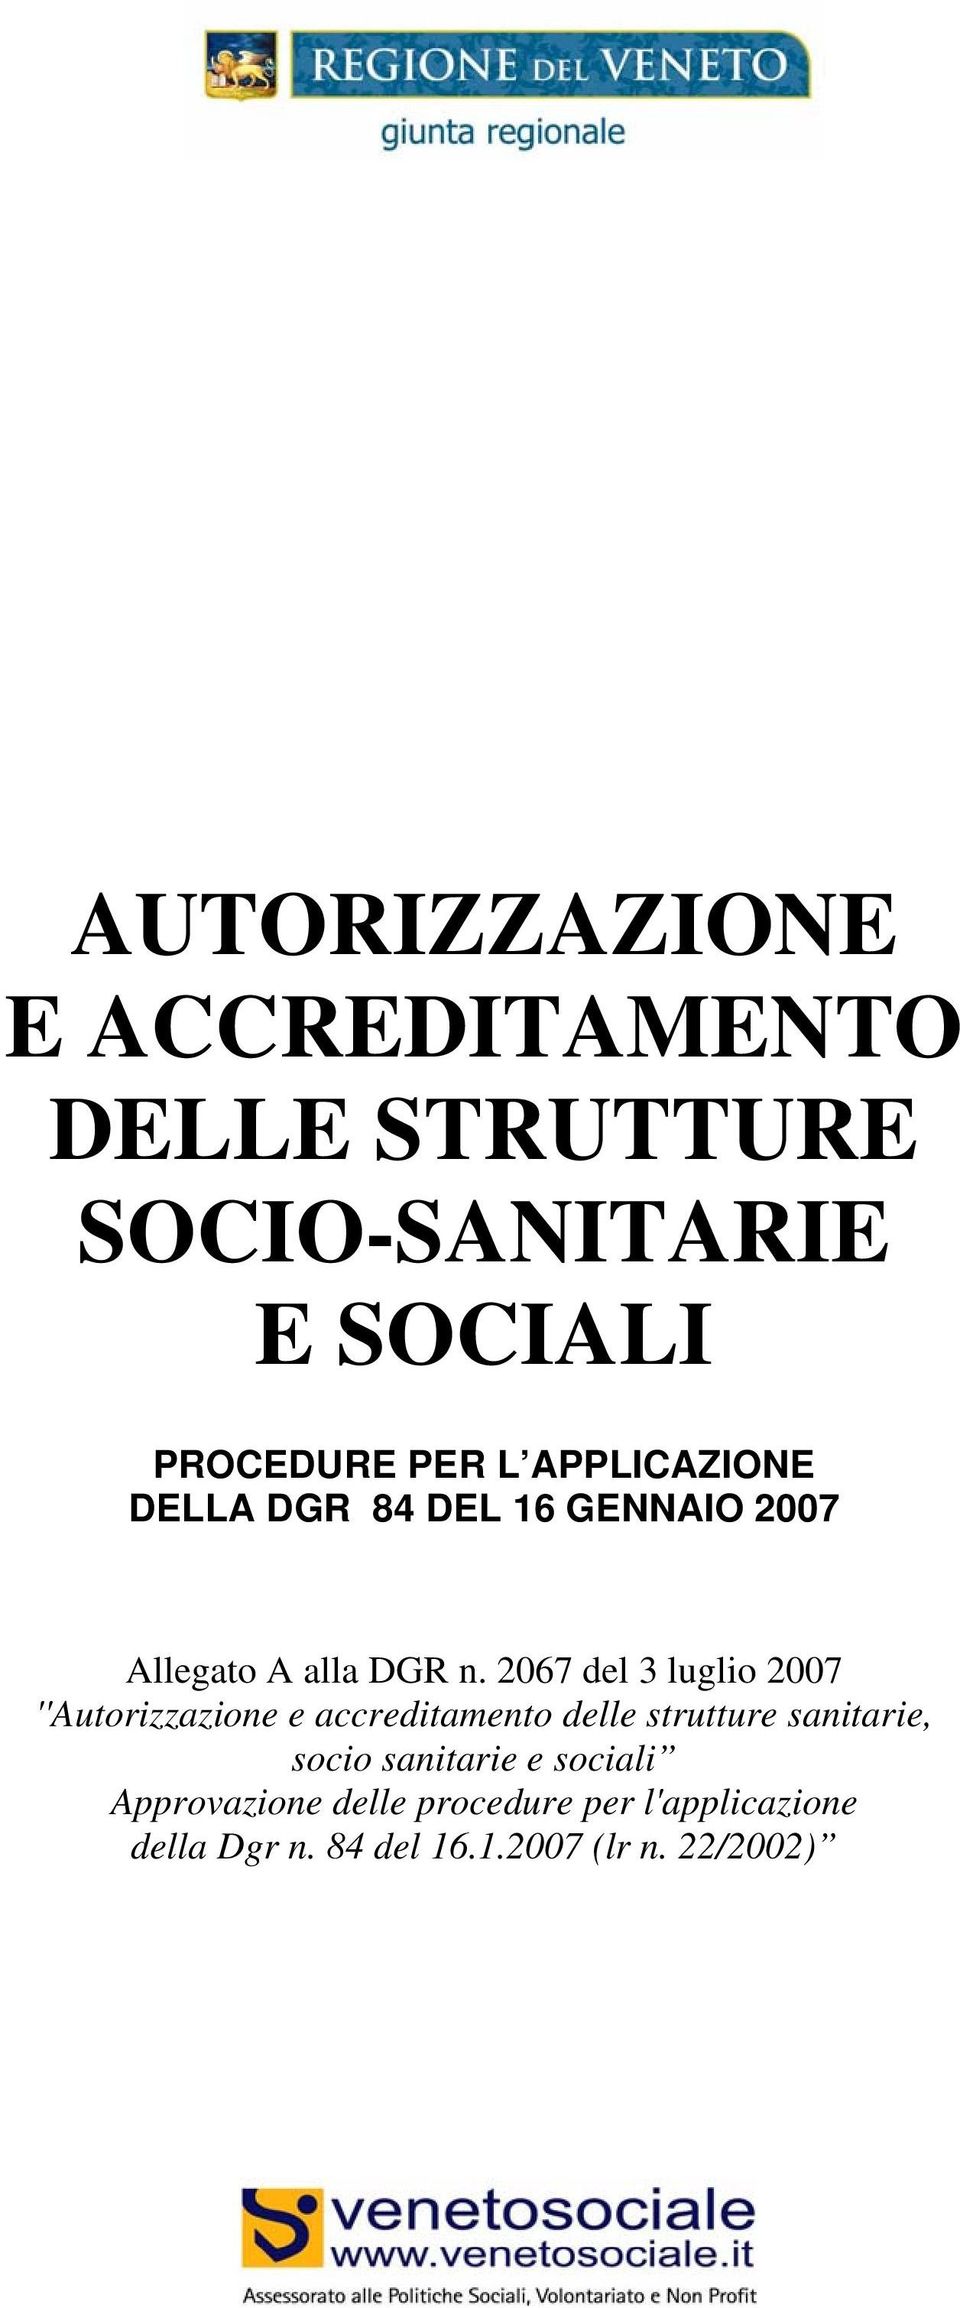 2067 del 3 luglio 2007 ''Autorizzazione e accreditamento delle strutture sanitarie, socio